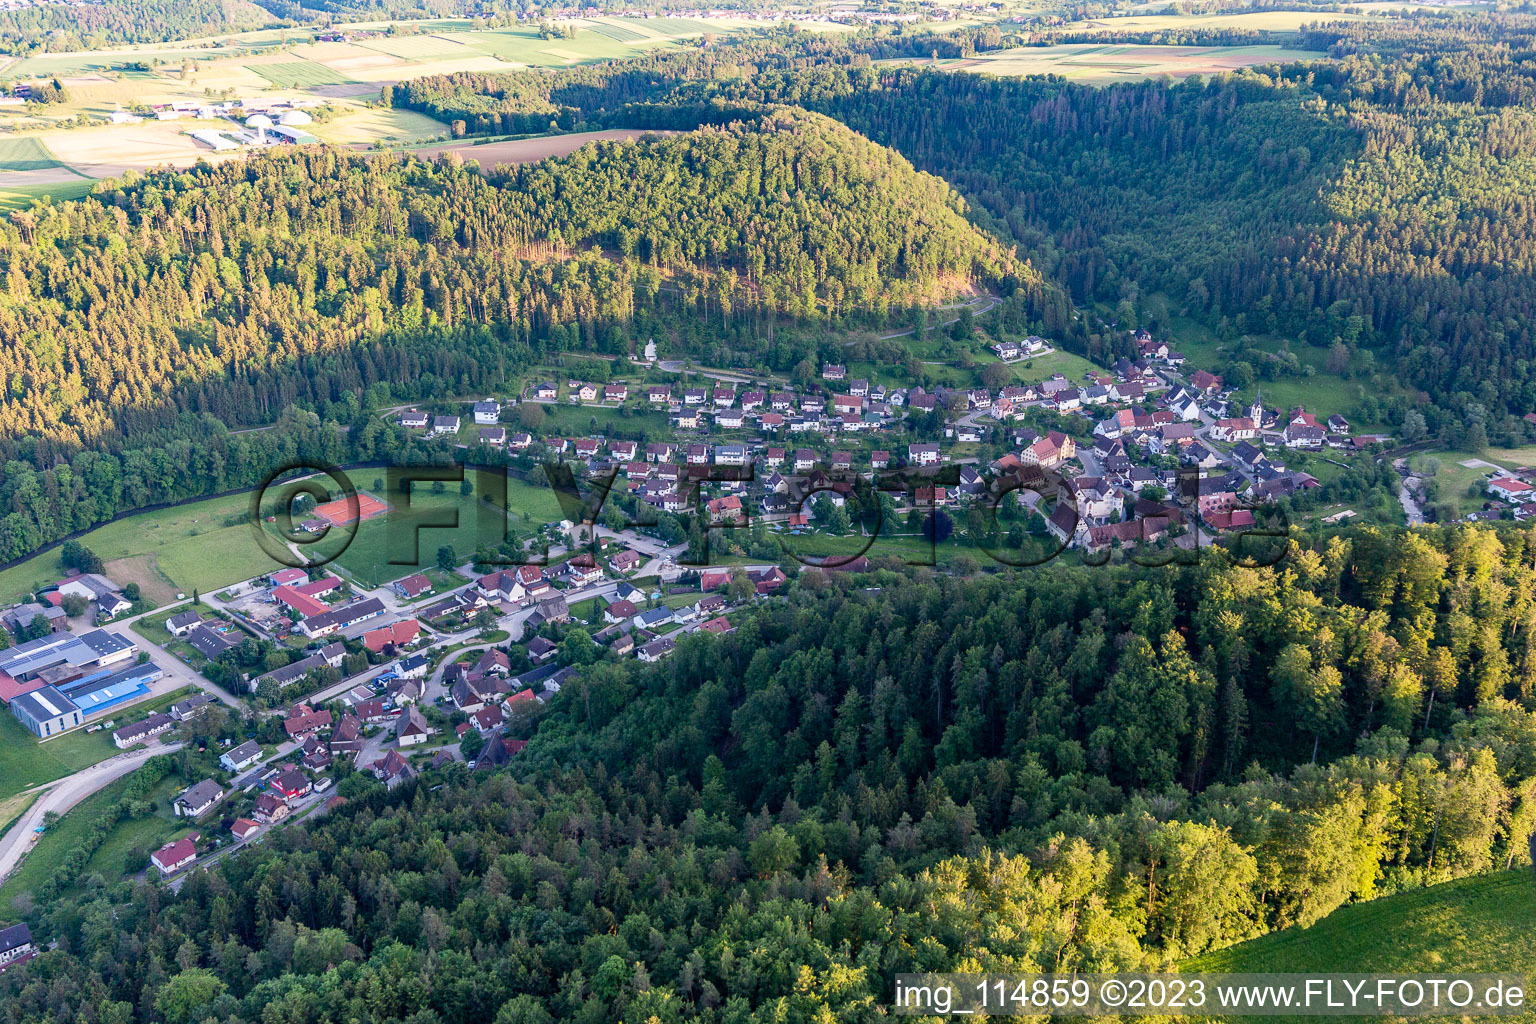 Vue aérienne de Quartier Glatt in Sulz am Neckar dans le département Bade-Wurtemberg, Allemagne